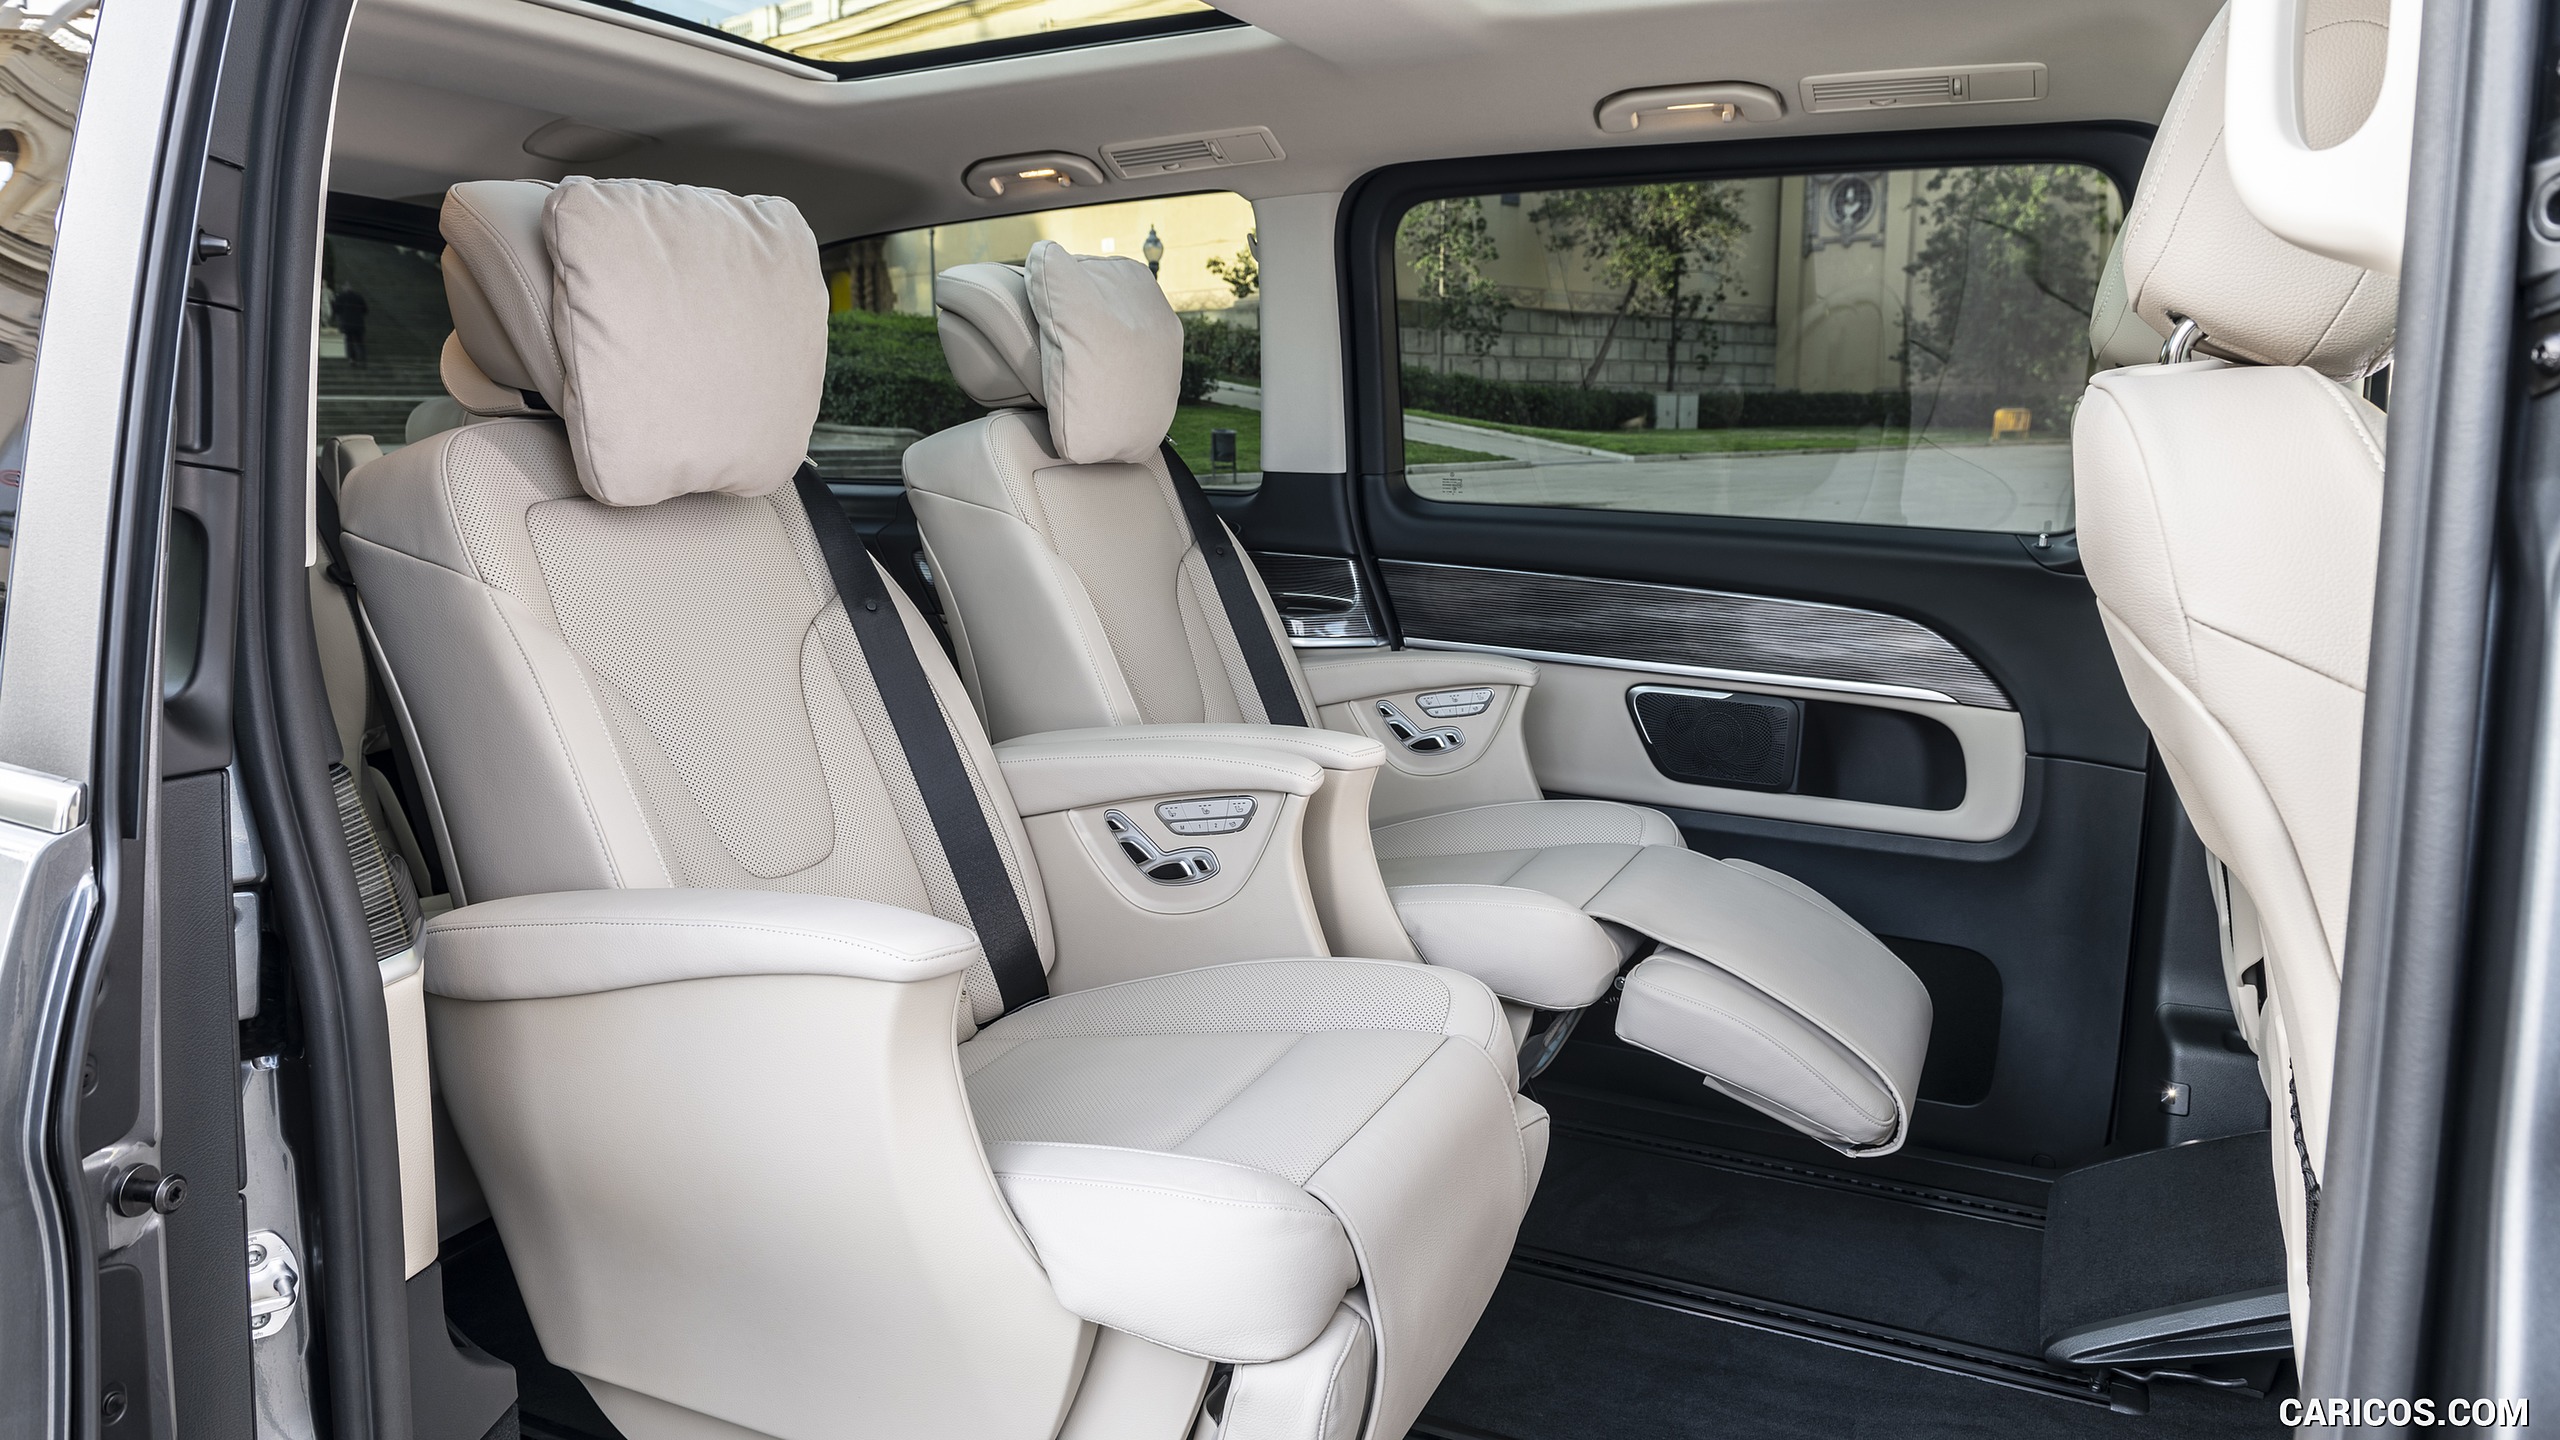 2019 Mercedes-Benz V-Class V300d AVANTGARDE - Interior, Rear Seats, #115 of 216